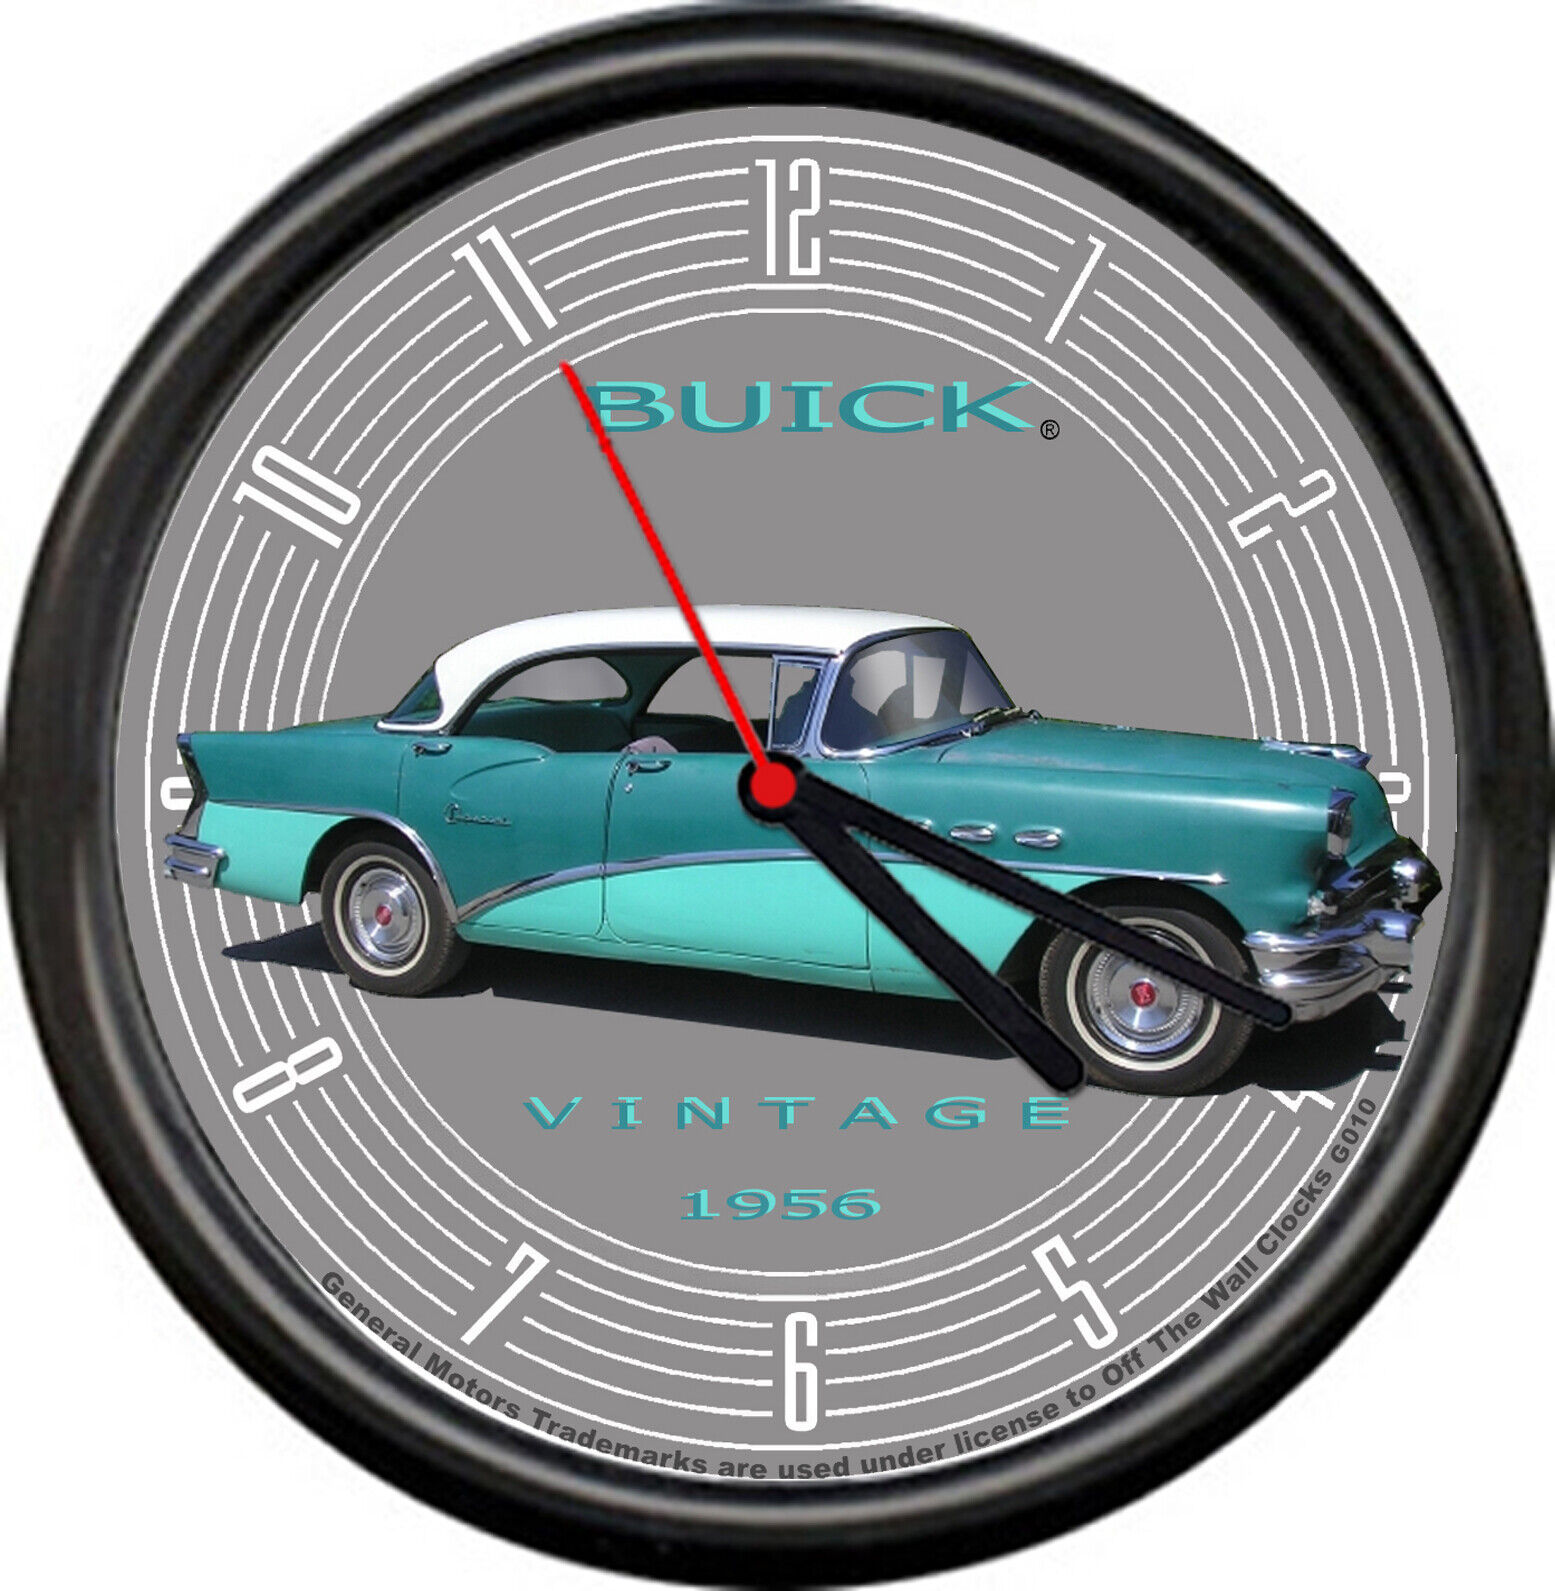 Licensed 1956 Buick 4 Door Sedan Vintage Blue General Motors Sign Wall Clock